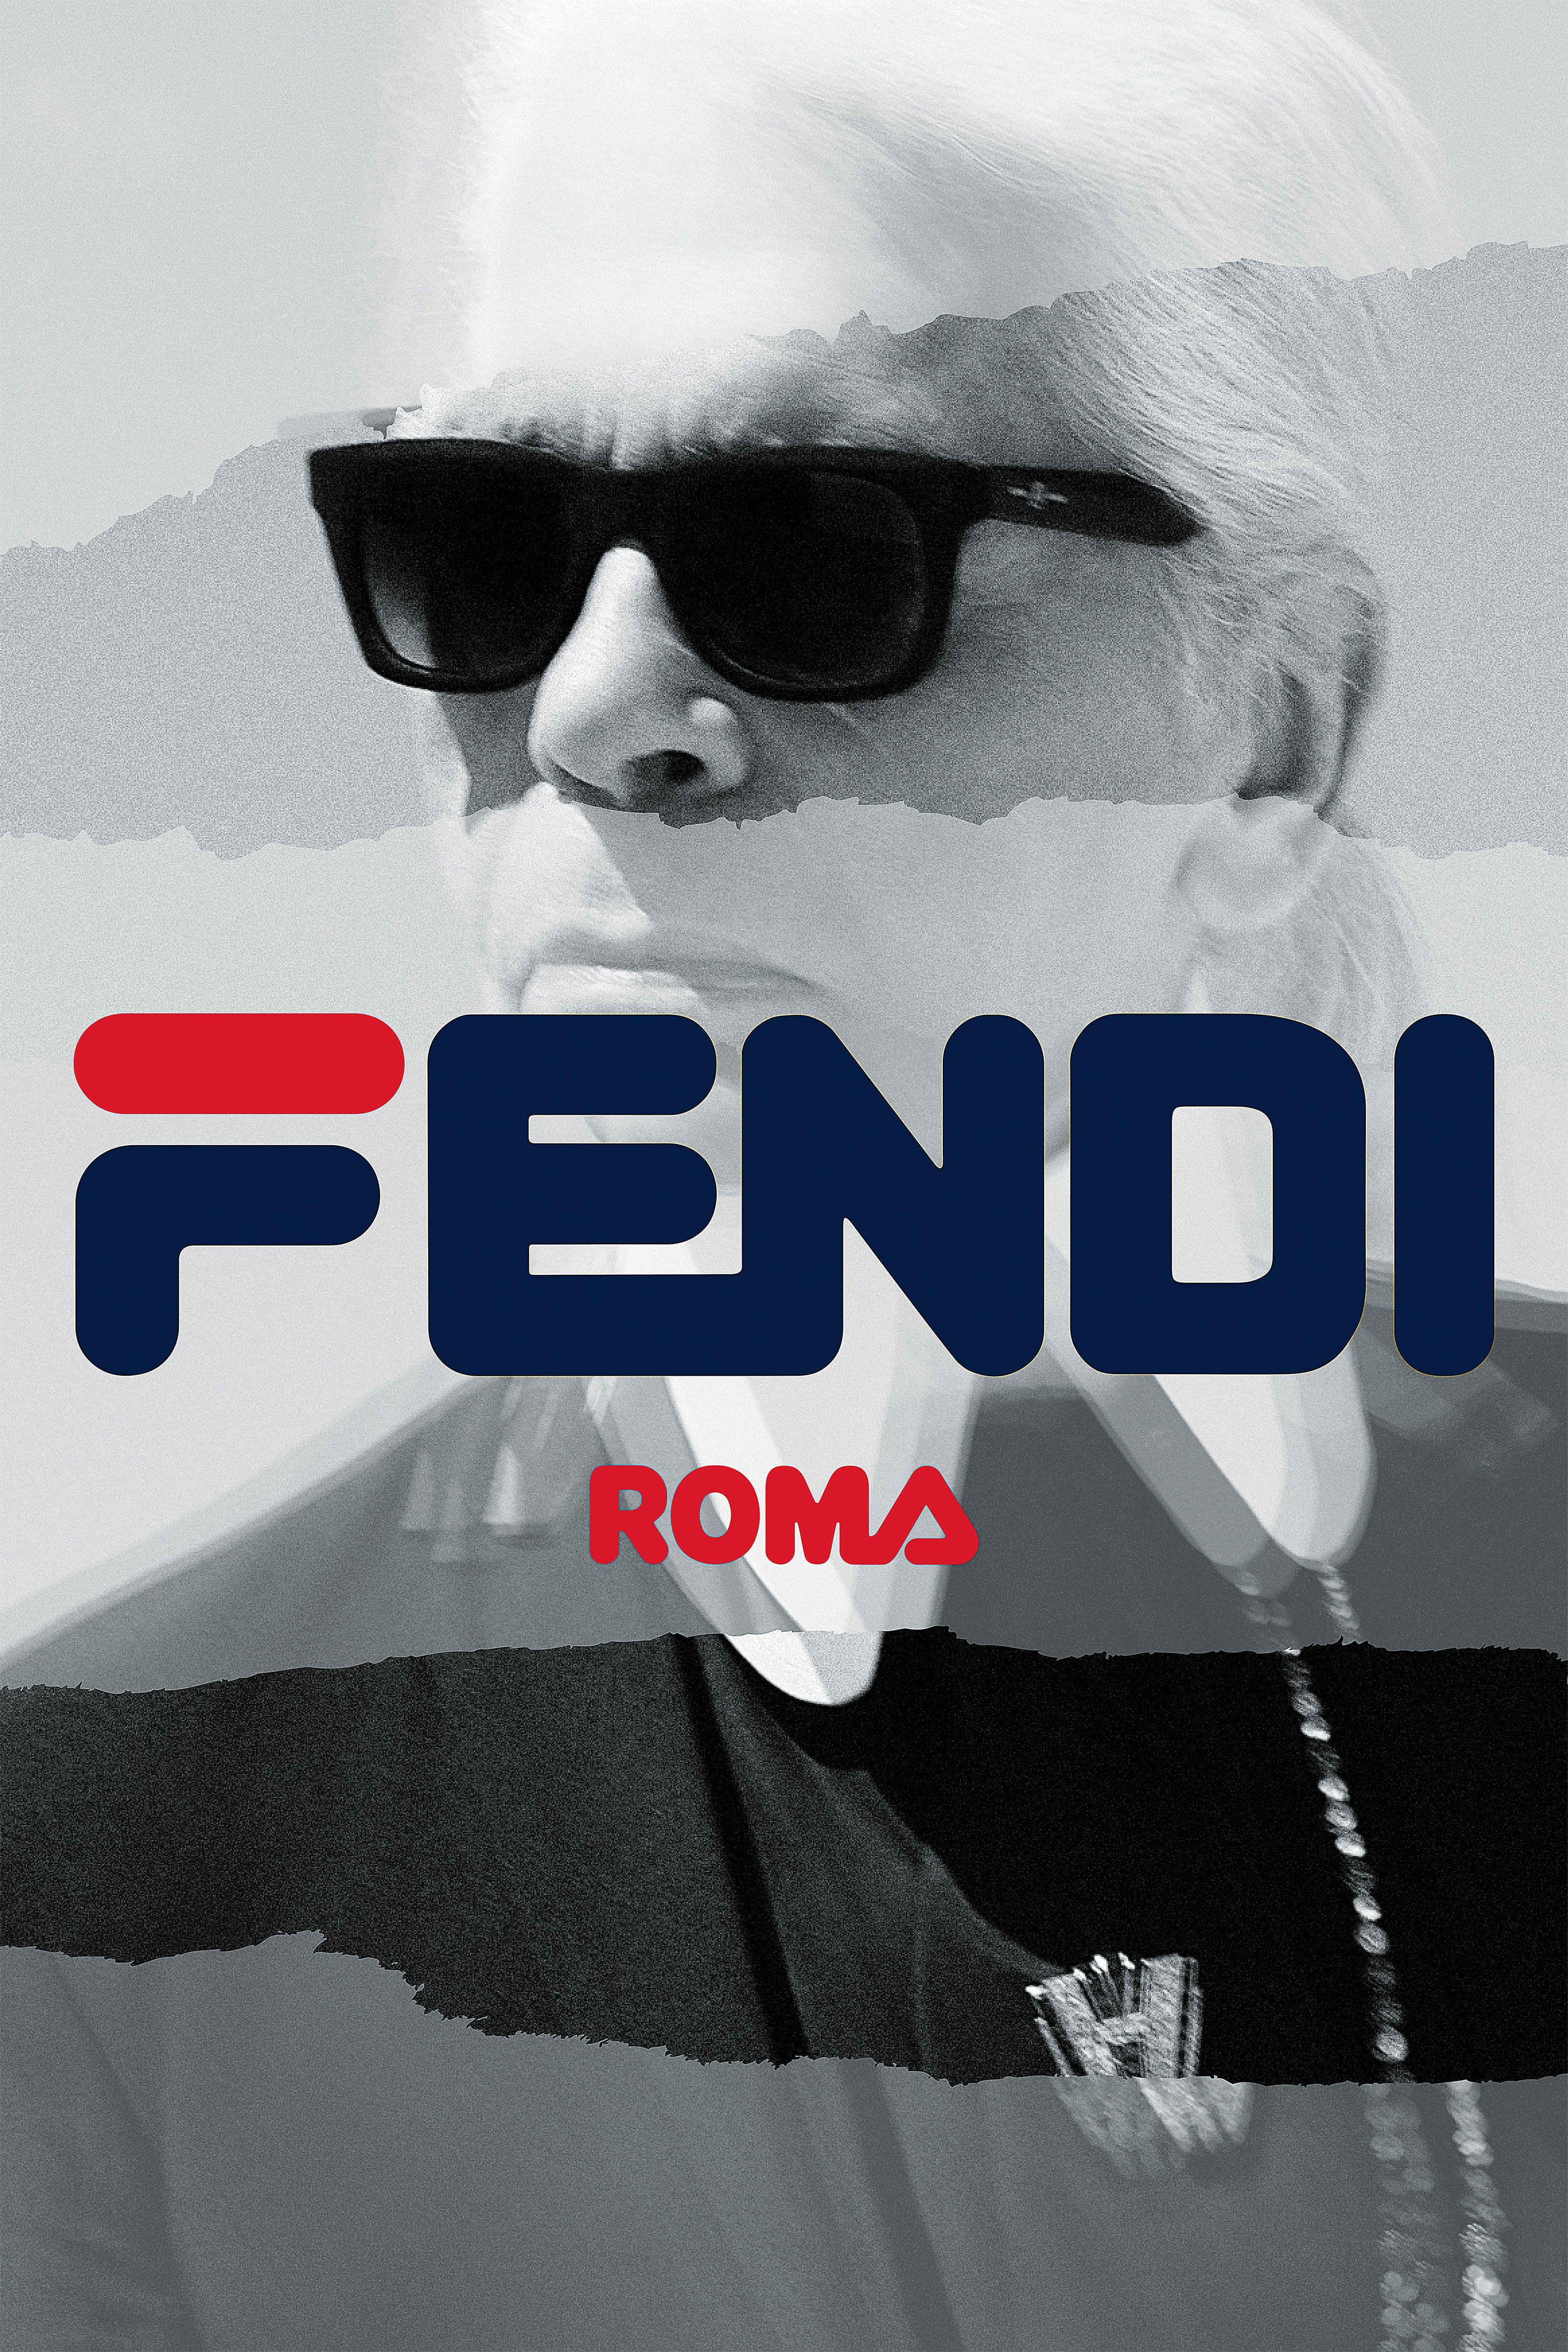 Fendi Roma  Fendi, Fendi wallpapers, ? logo